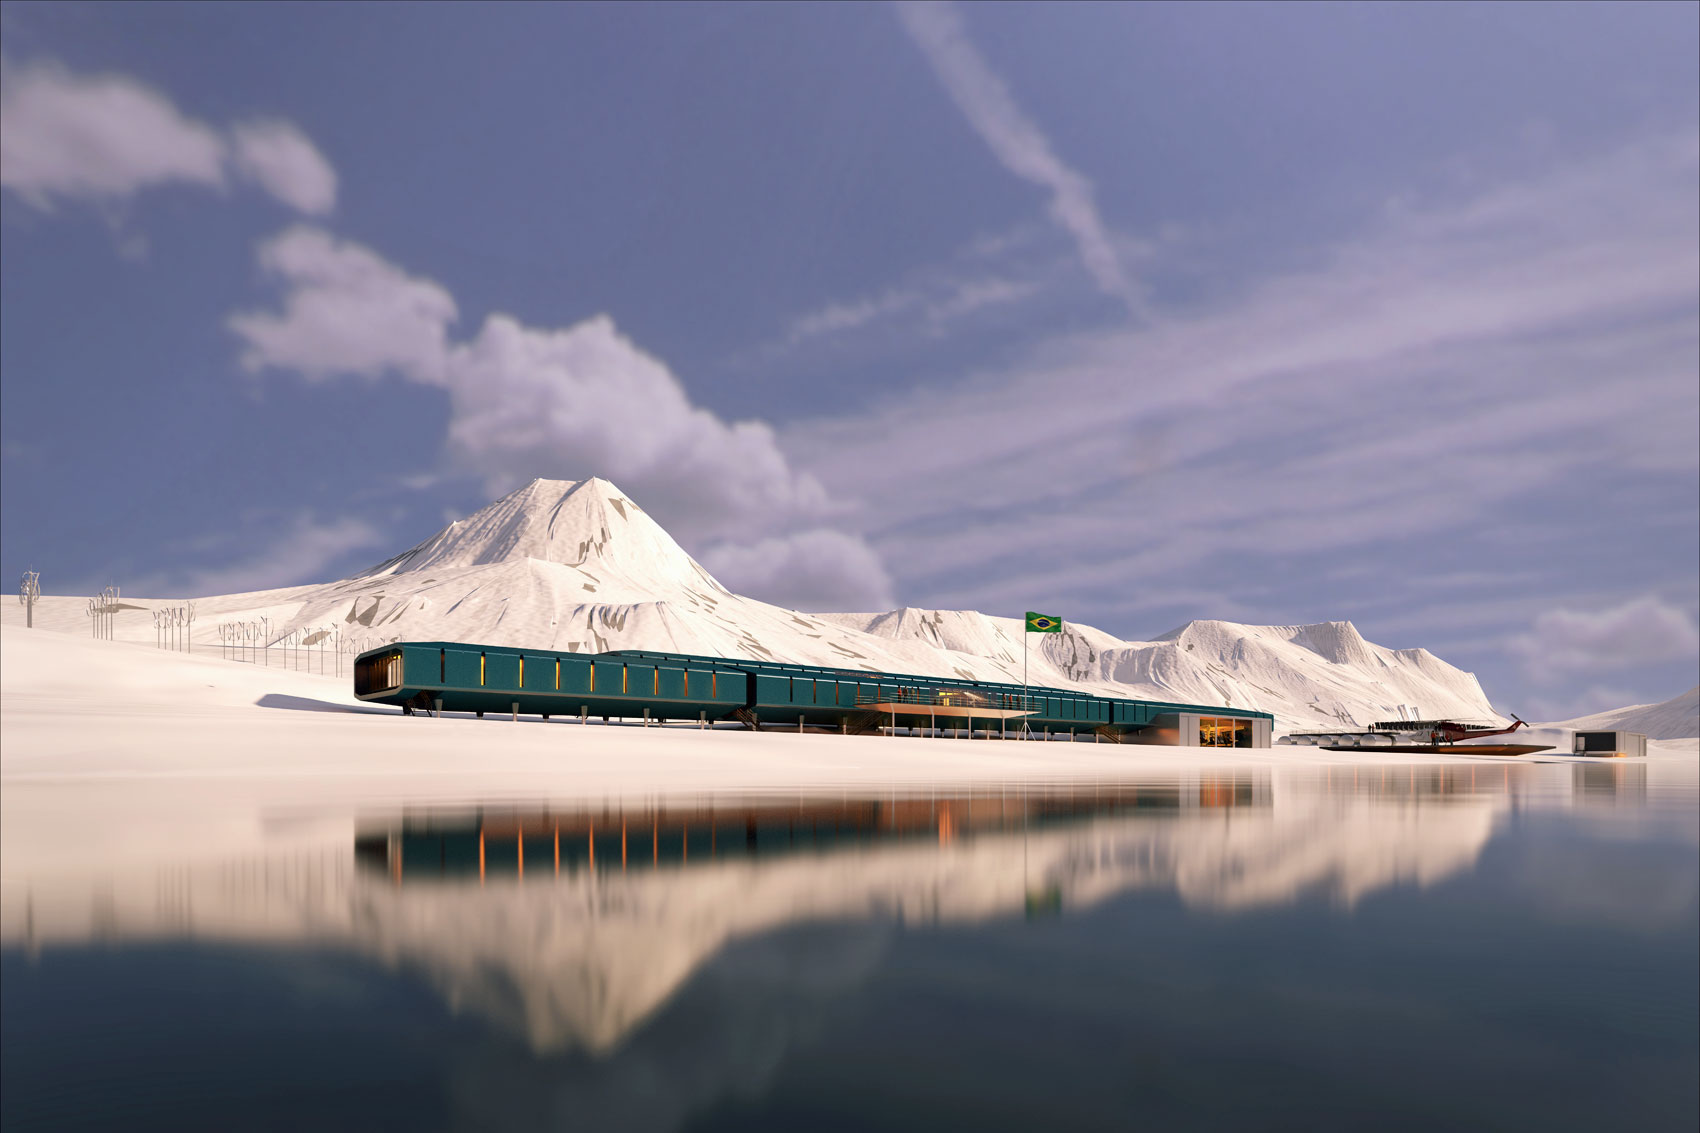 O projeto da nova Estação Antártica Comandante Ferraz foi divulgado na noite desta segunda-feira (15). O desenho foi feito por um grupo de arquitetos de Curitiba (PR). A nova estação ocupará uma área de 3,2 mil m² e terá capacidade para 64 pessoas